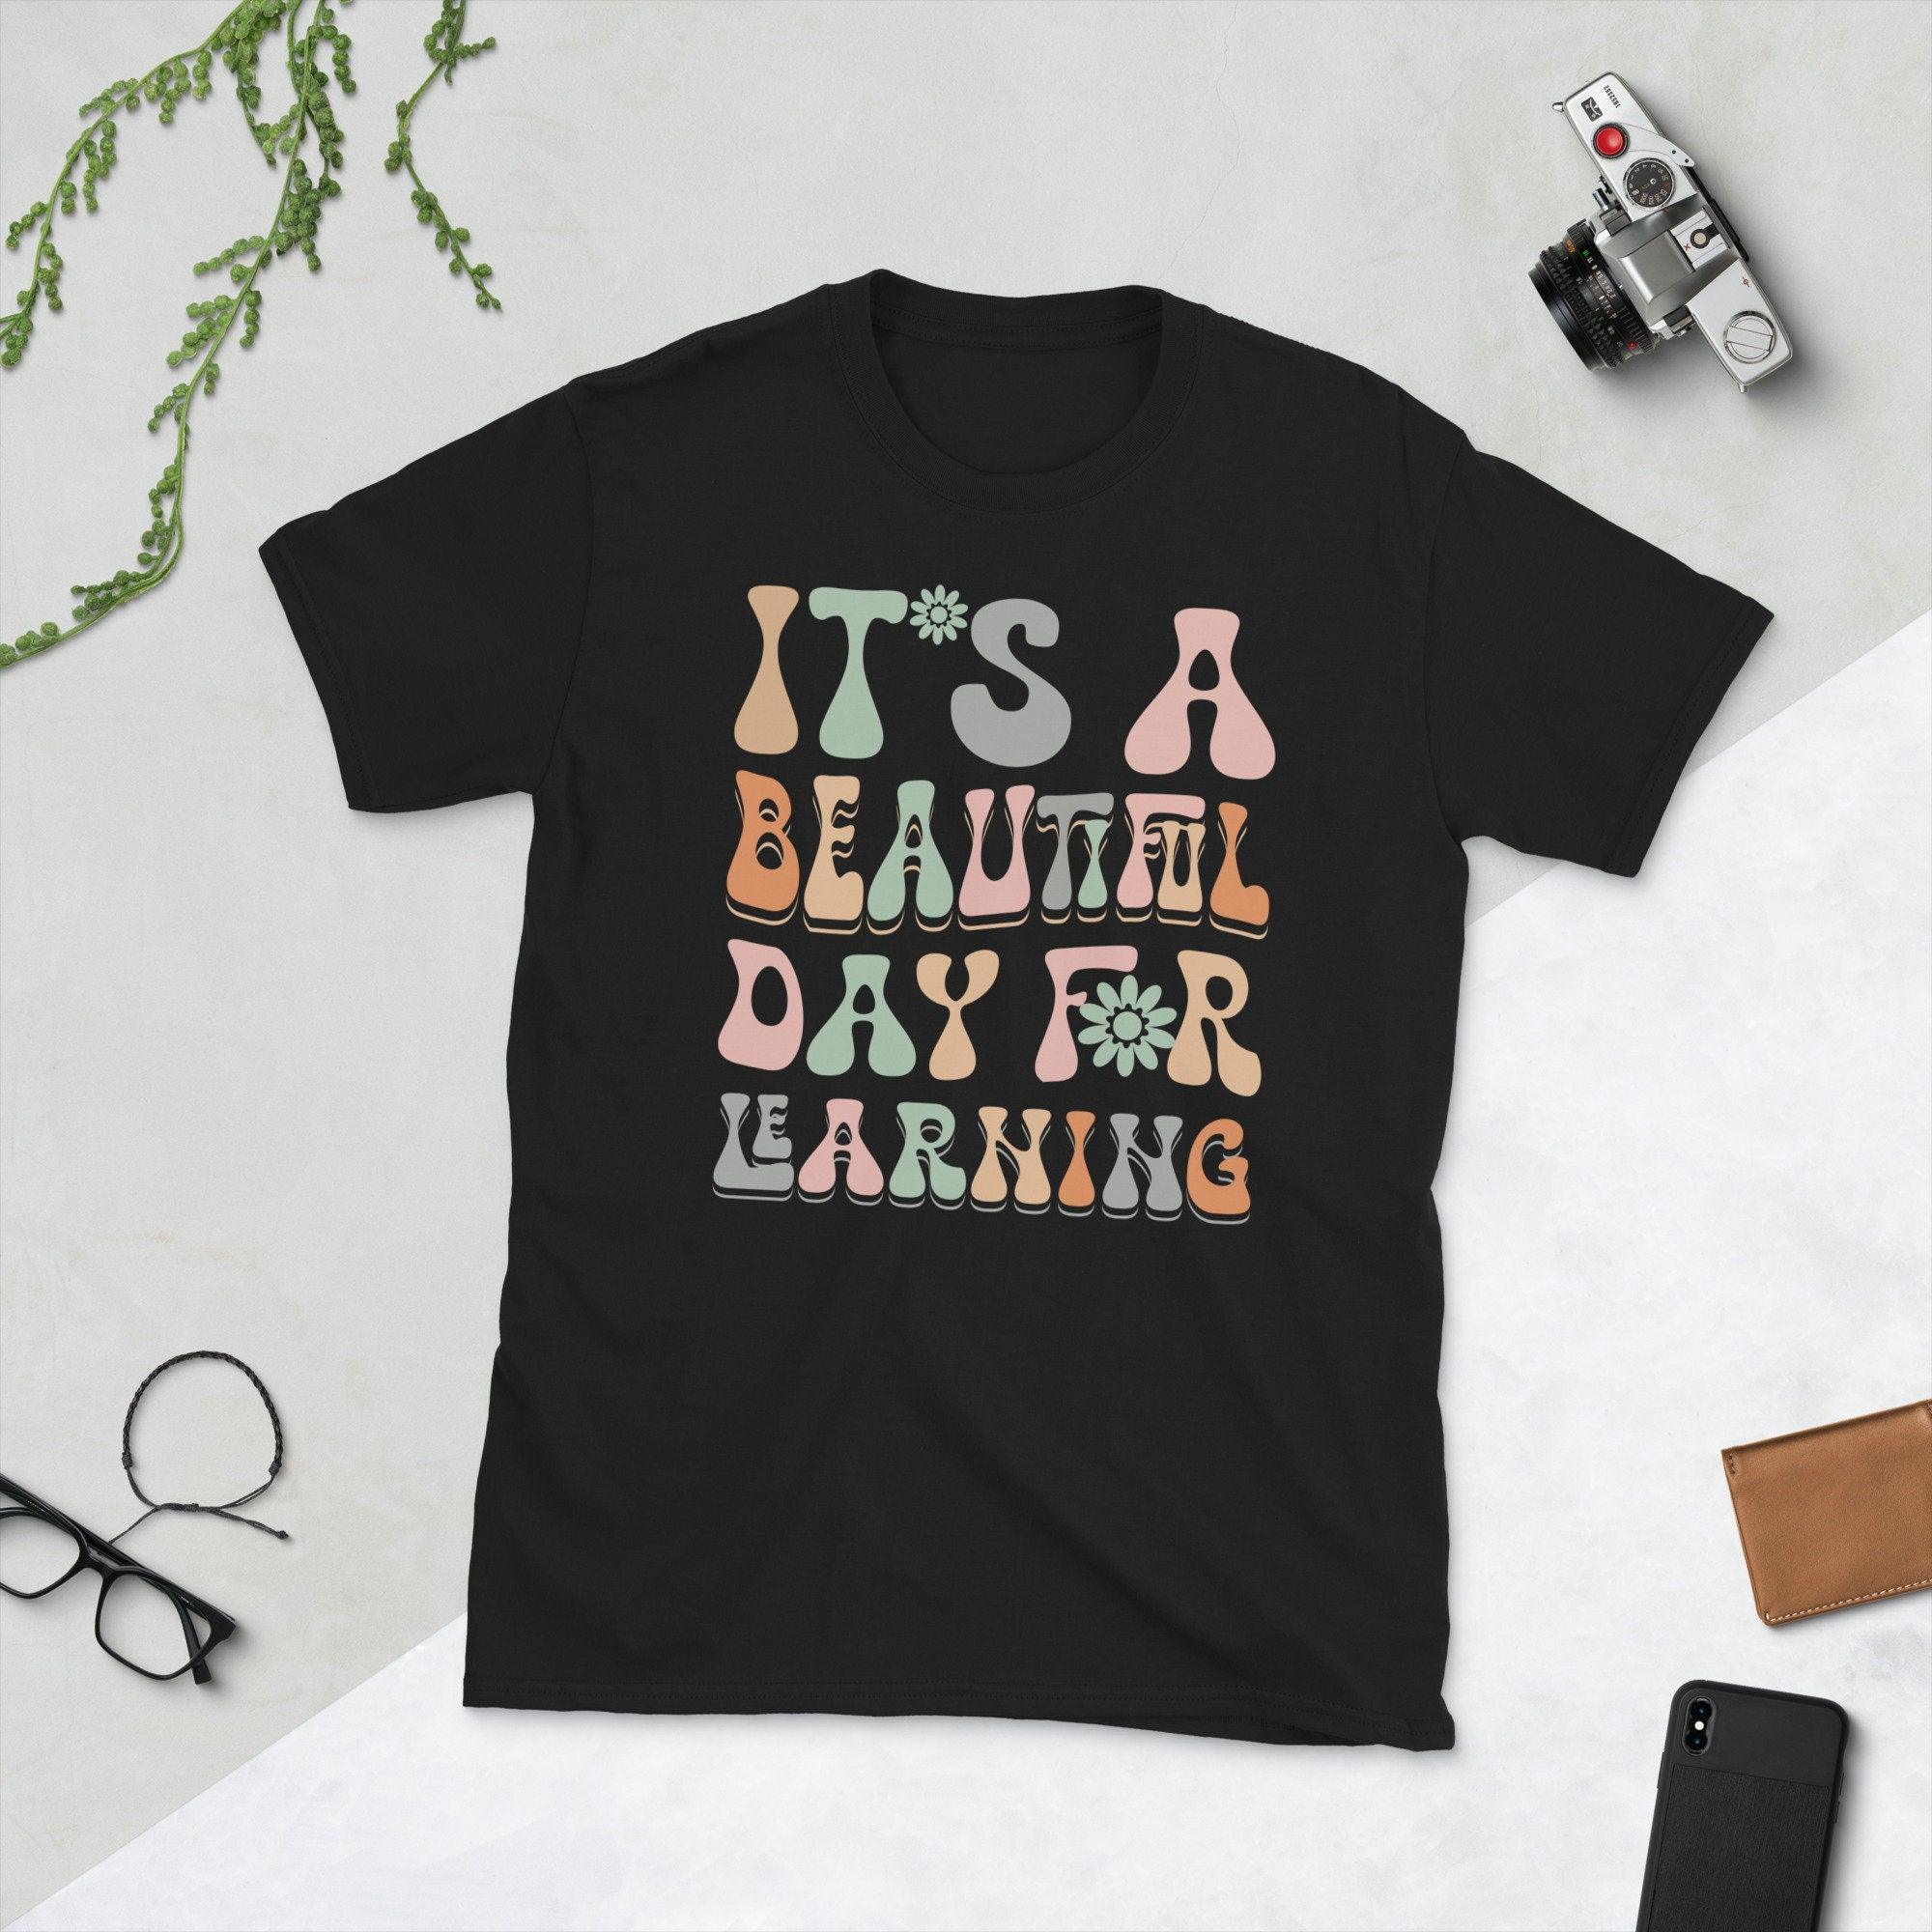 قميص المعلم الرجعية للنساء إنه يوم جميل للتعلم تي شيرت مضحك العودة إلى المدرسة حياة المعلم بلايز قميص - plusminusco.com